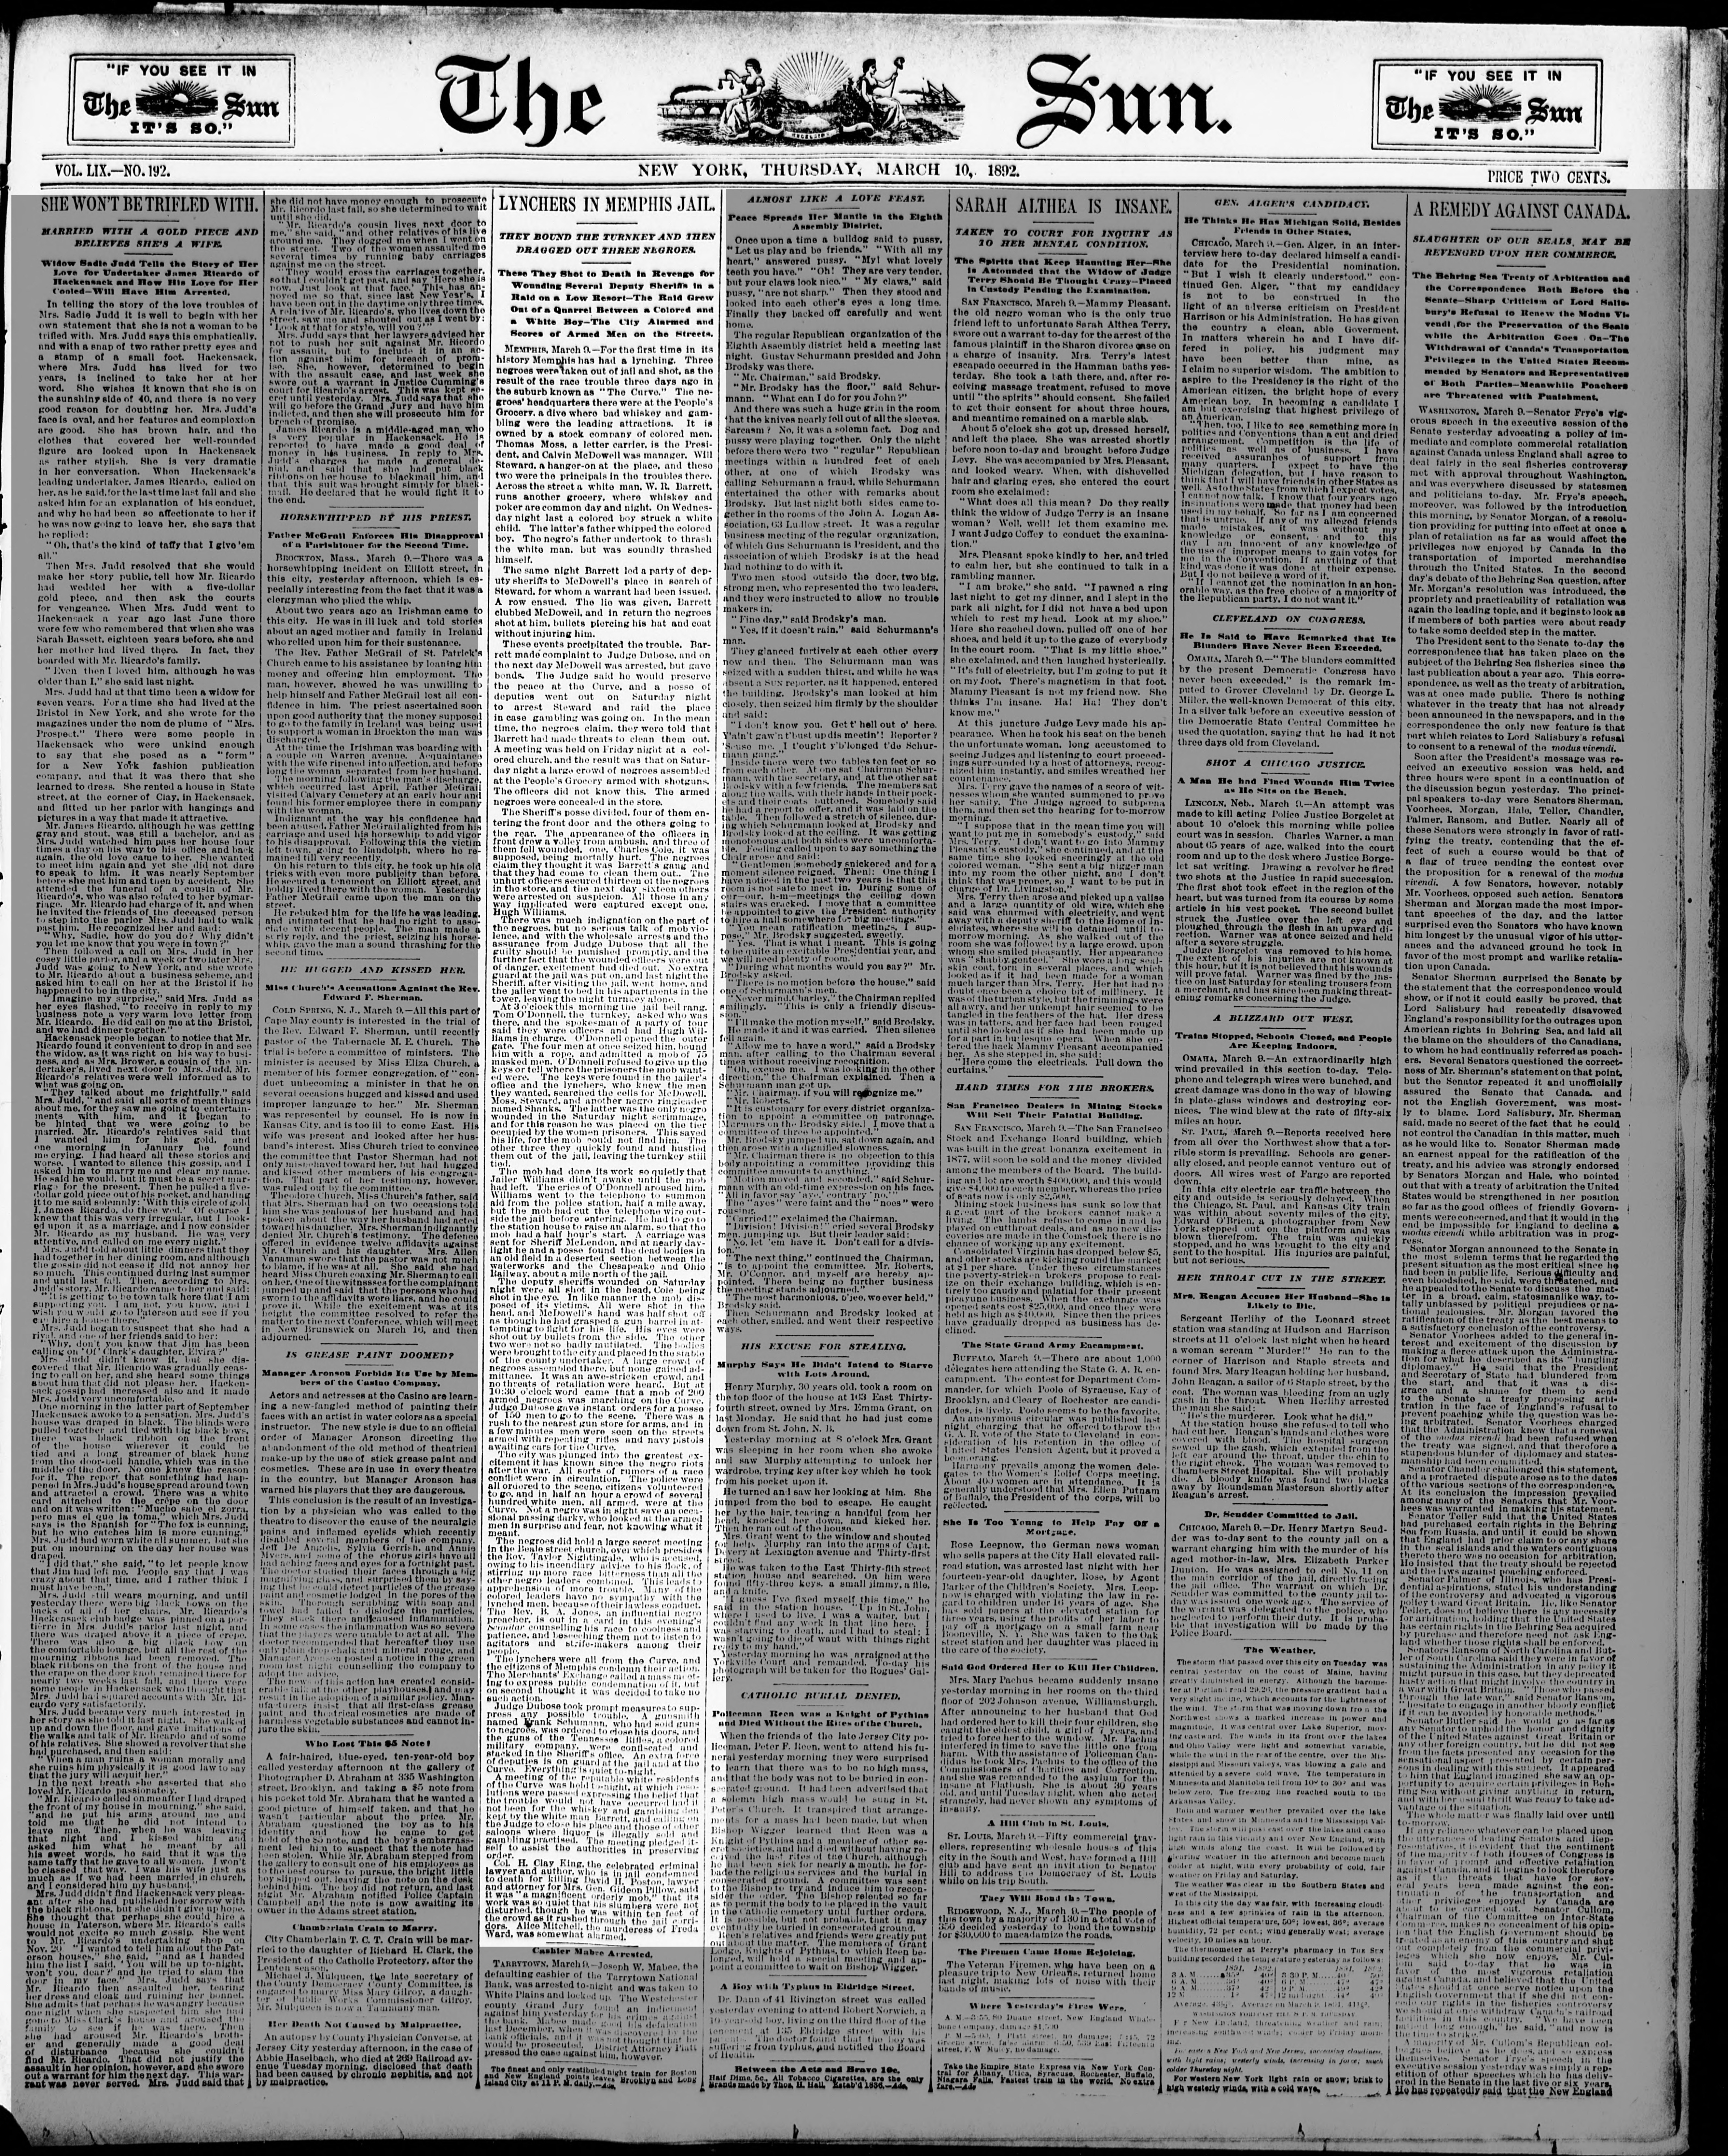 New York Sun, 3/10/1892